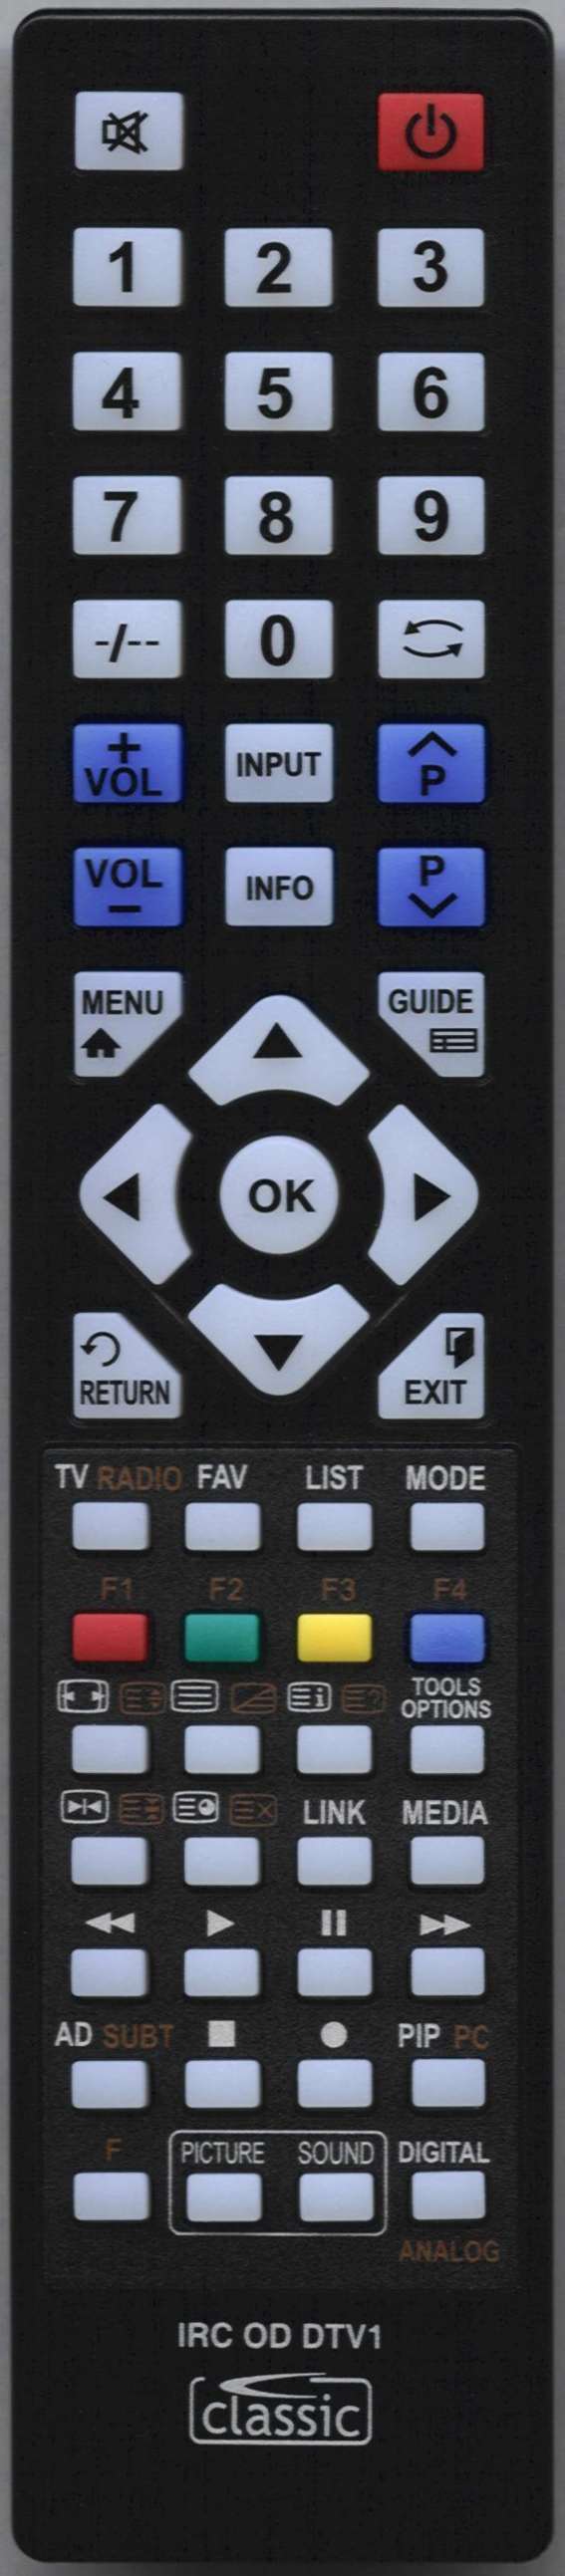 PANASONIC TX-48CX400B Remote Control